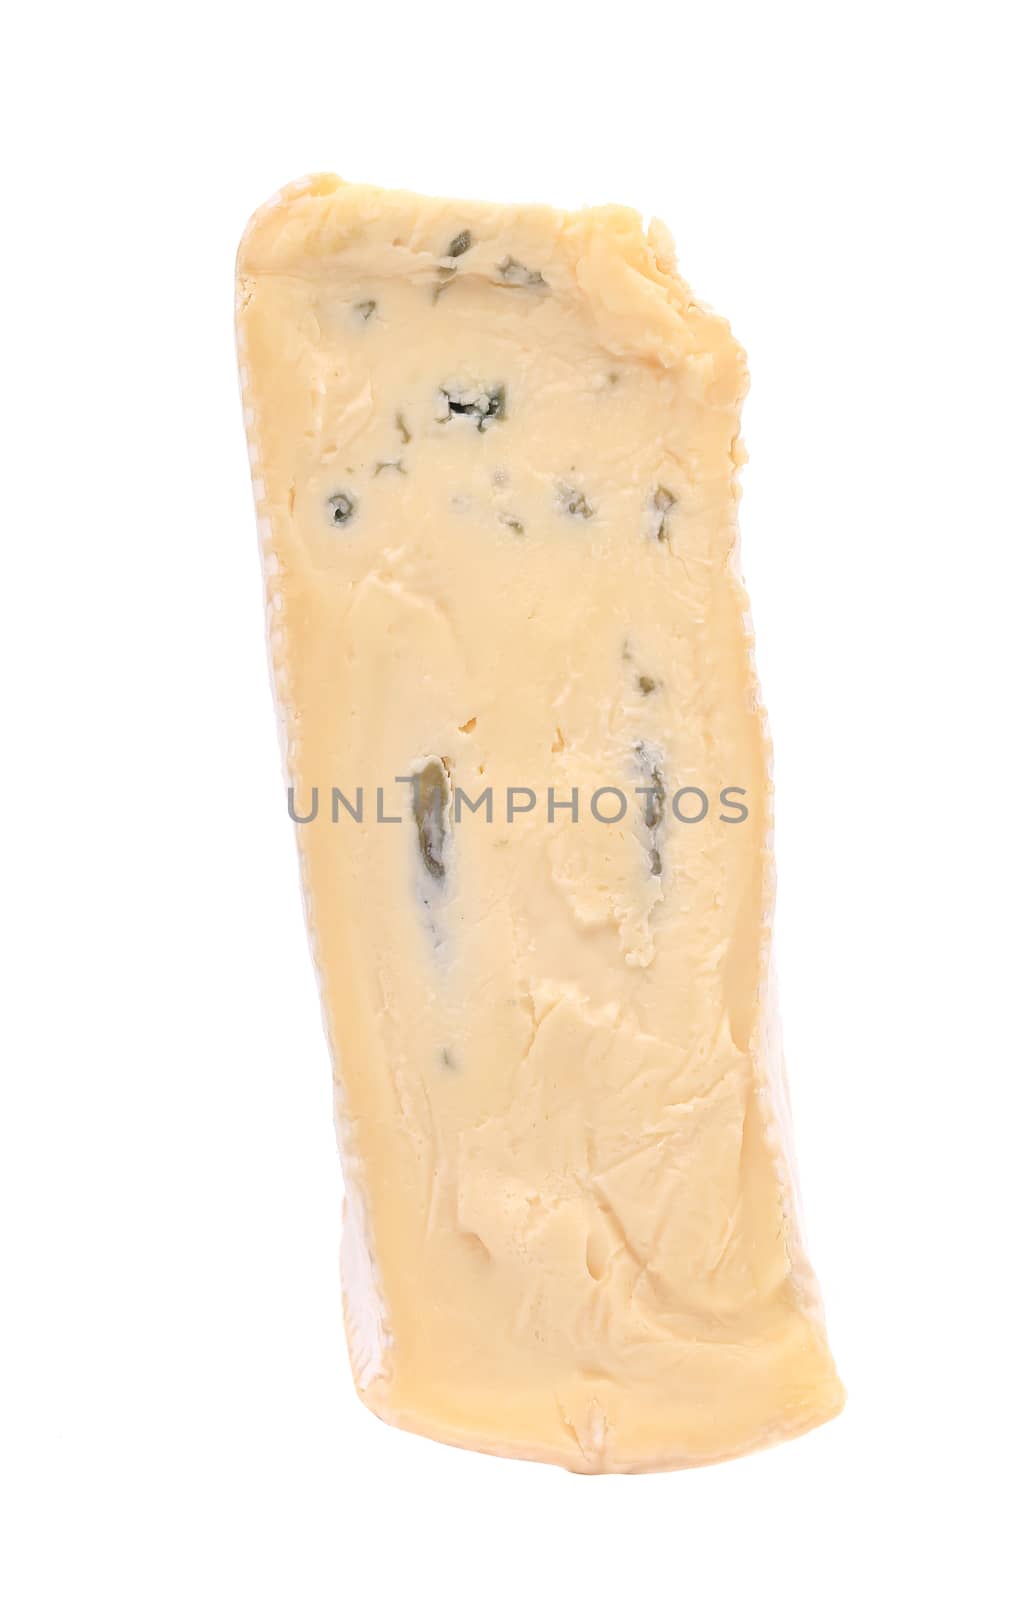 Dor Blue cheese. by indigolotos